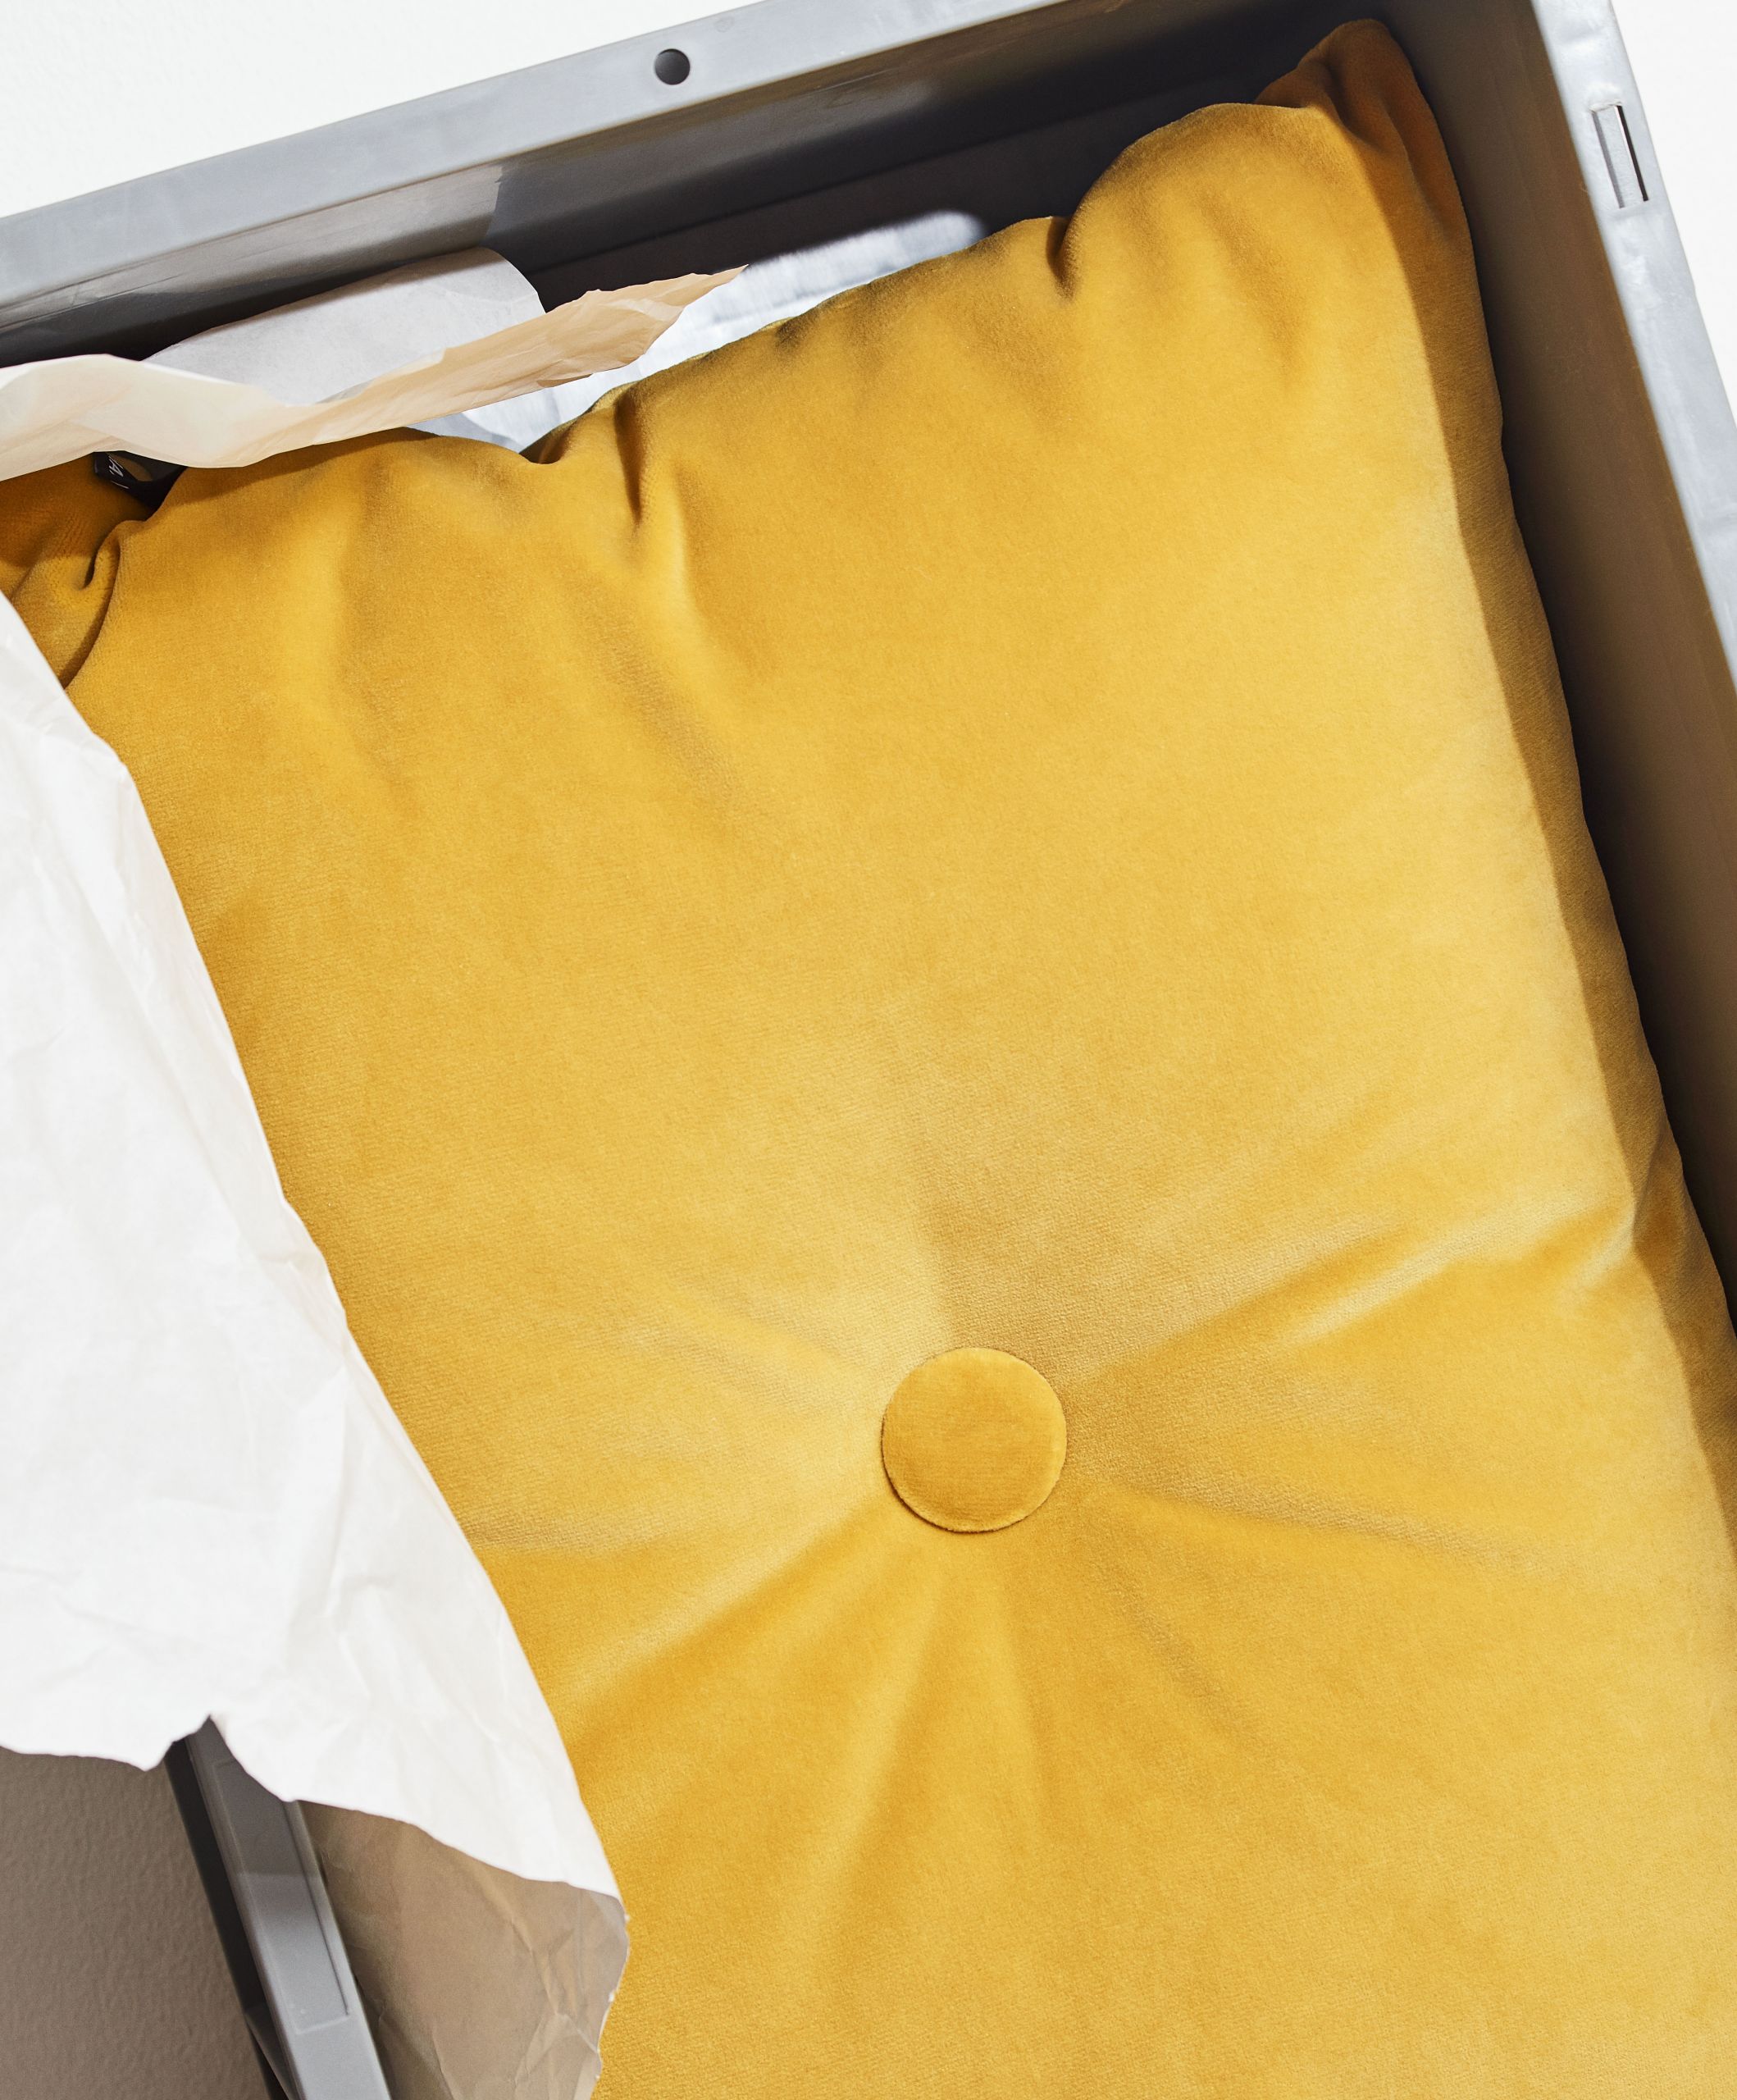 Dot cushion soft yellow